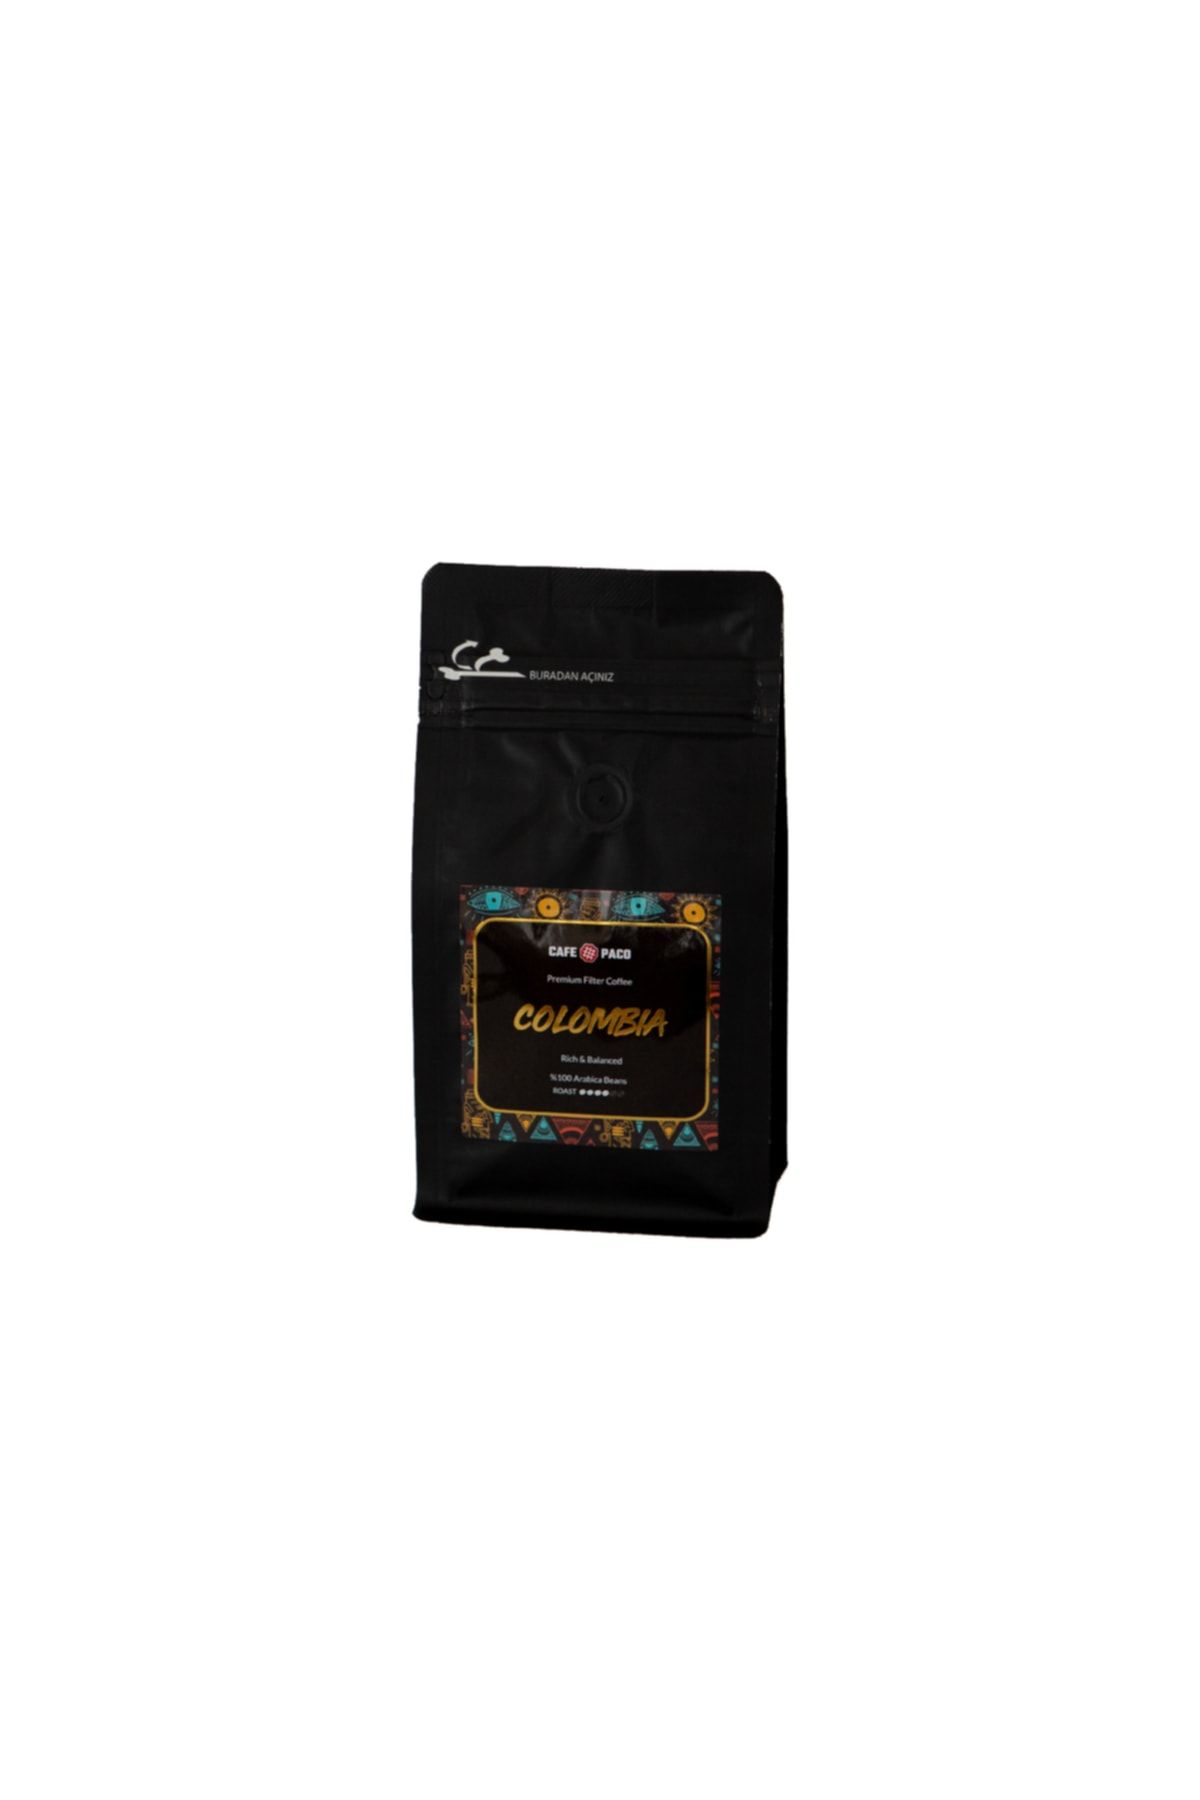 Paco Colombia Filter Coffee  Öğütülmüş 250 gr